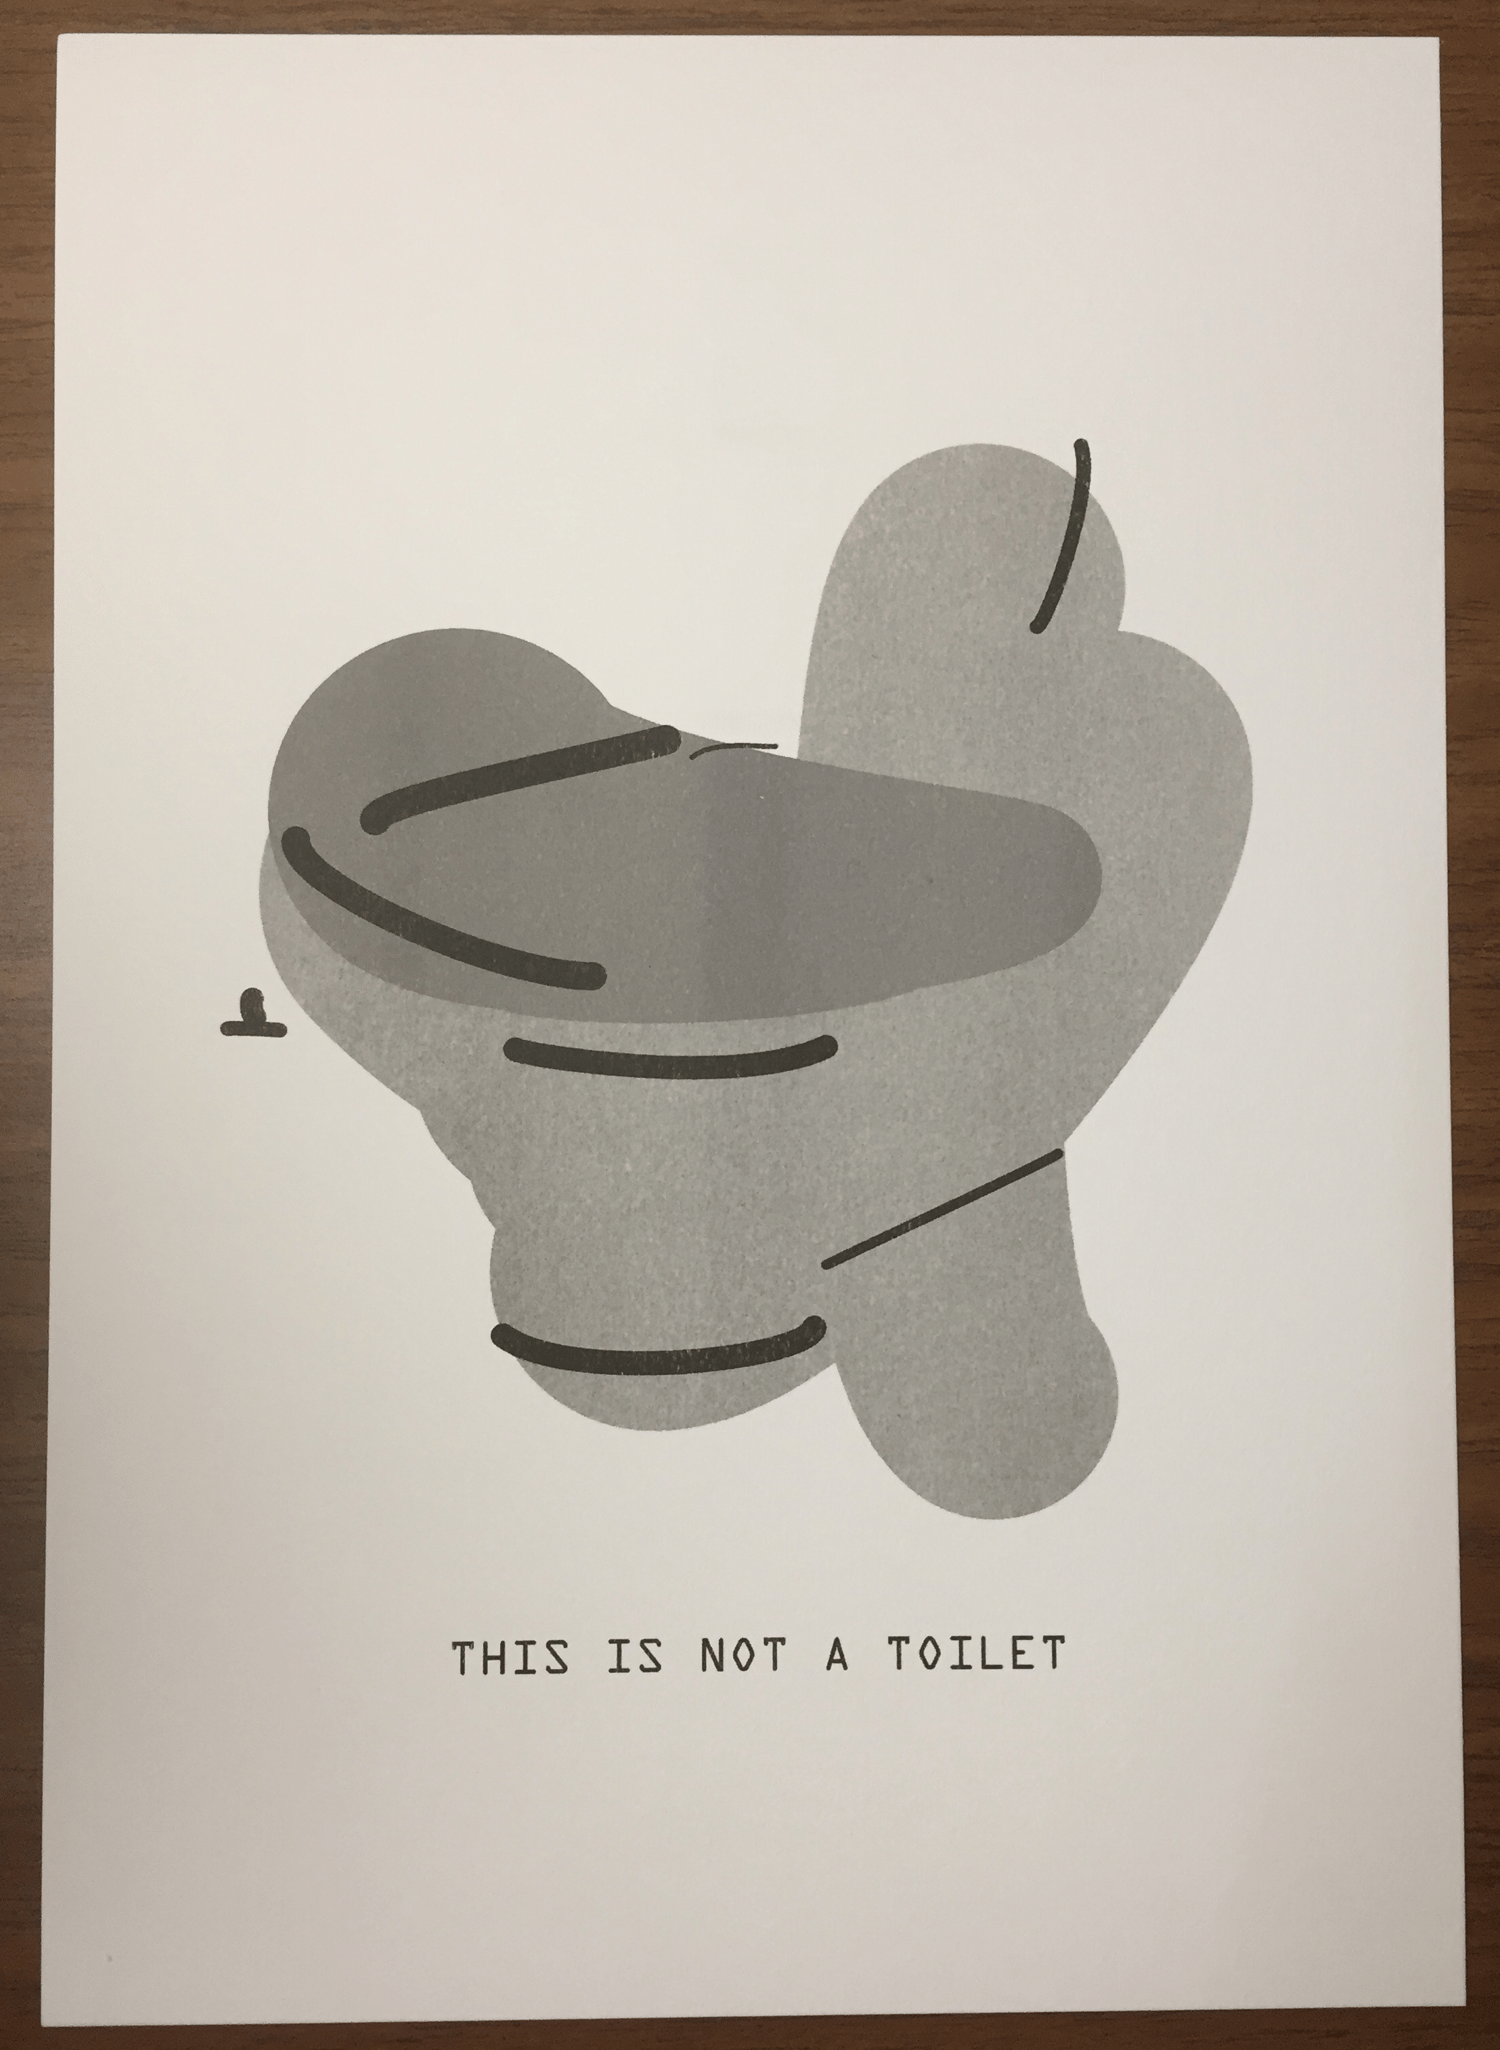 Image of The Treachery of ImageNet: Toilet